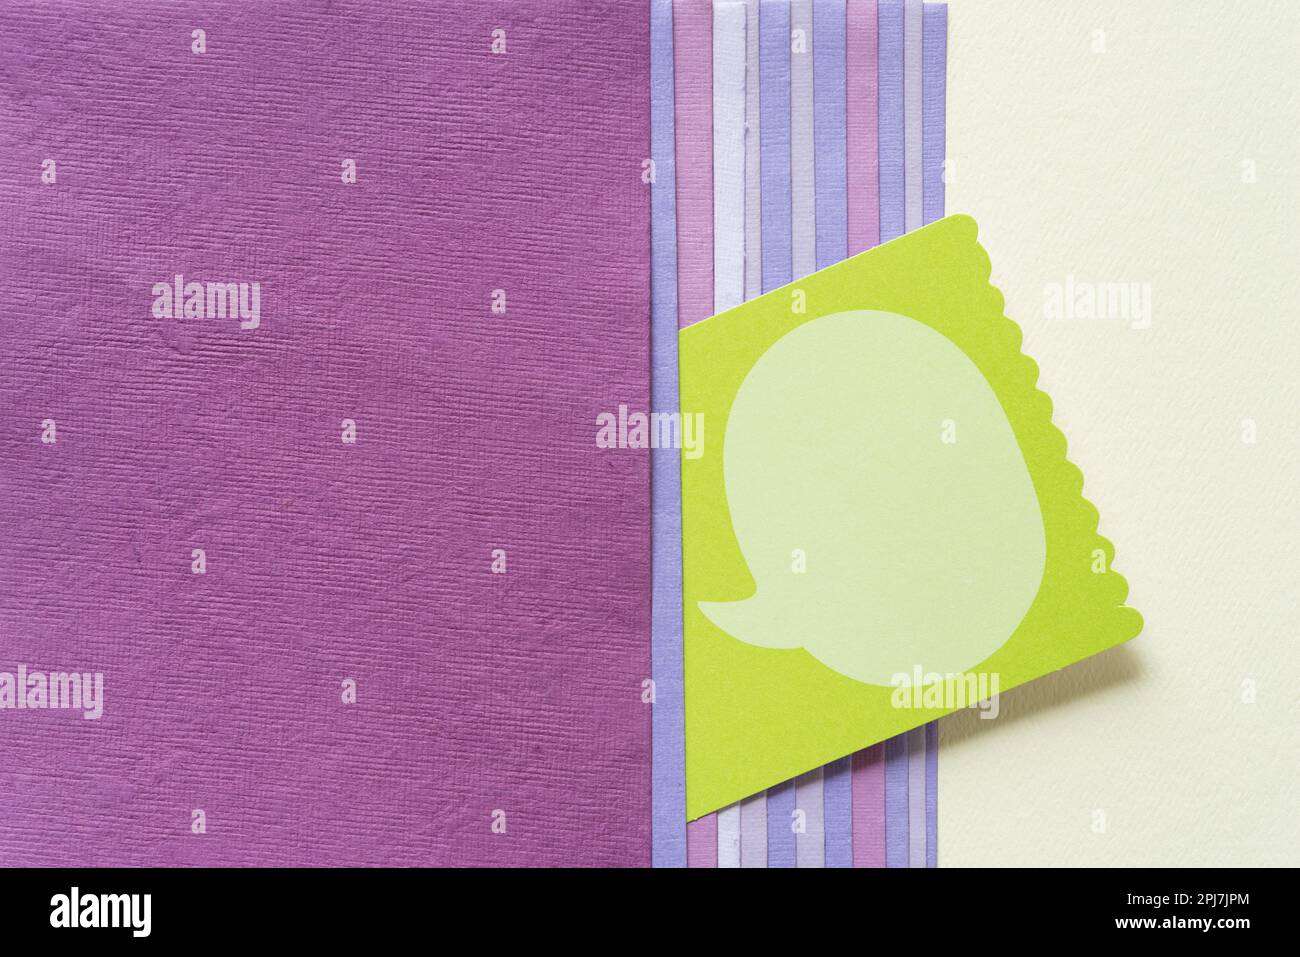 scheda verde con grande bolla vocale e una varietà di schede di carta di colore malva e rosa o viola e carta bianca Foto Stock